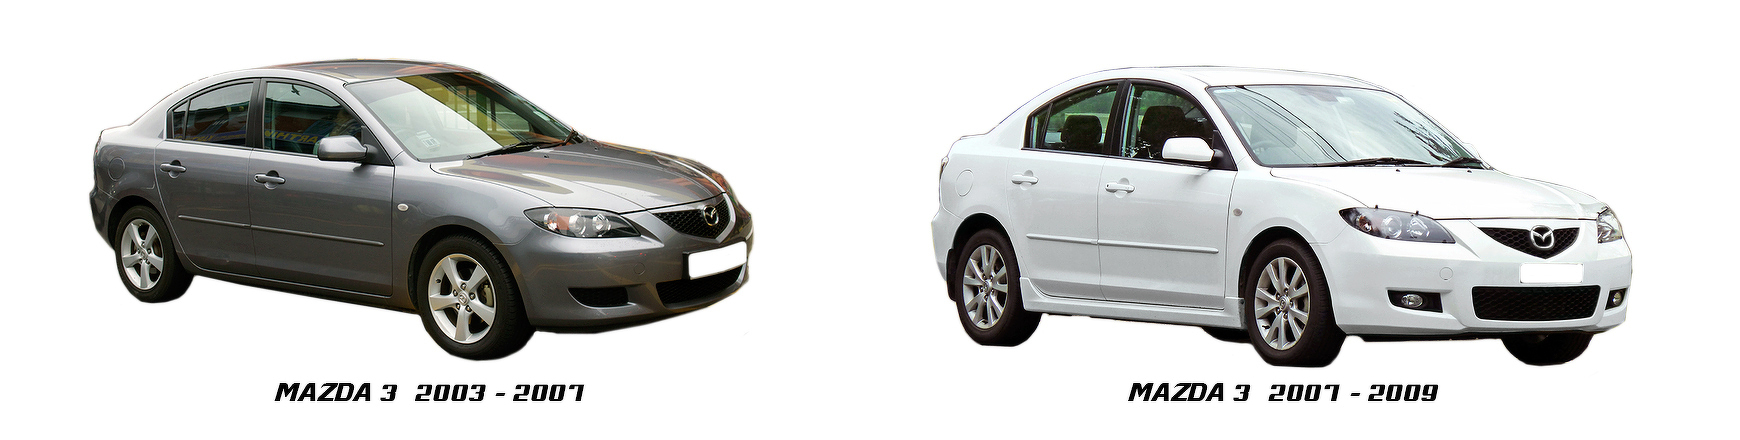 Piezas y Recambios de Mazda 3 de 2003 a 2009. Consulte en Veramauto.es